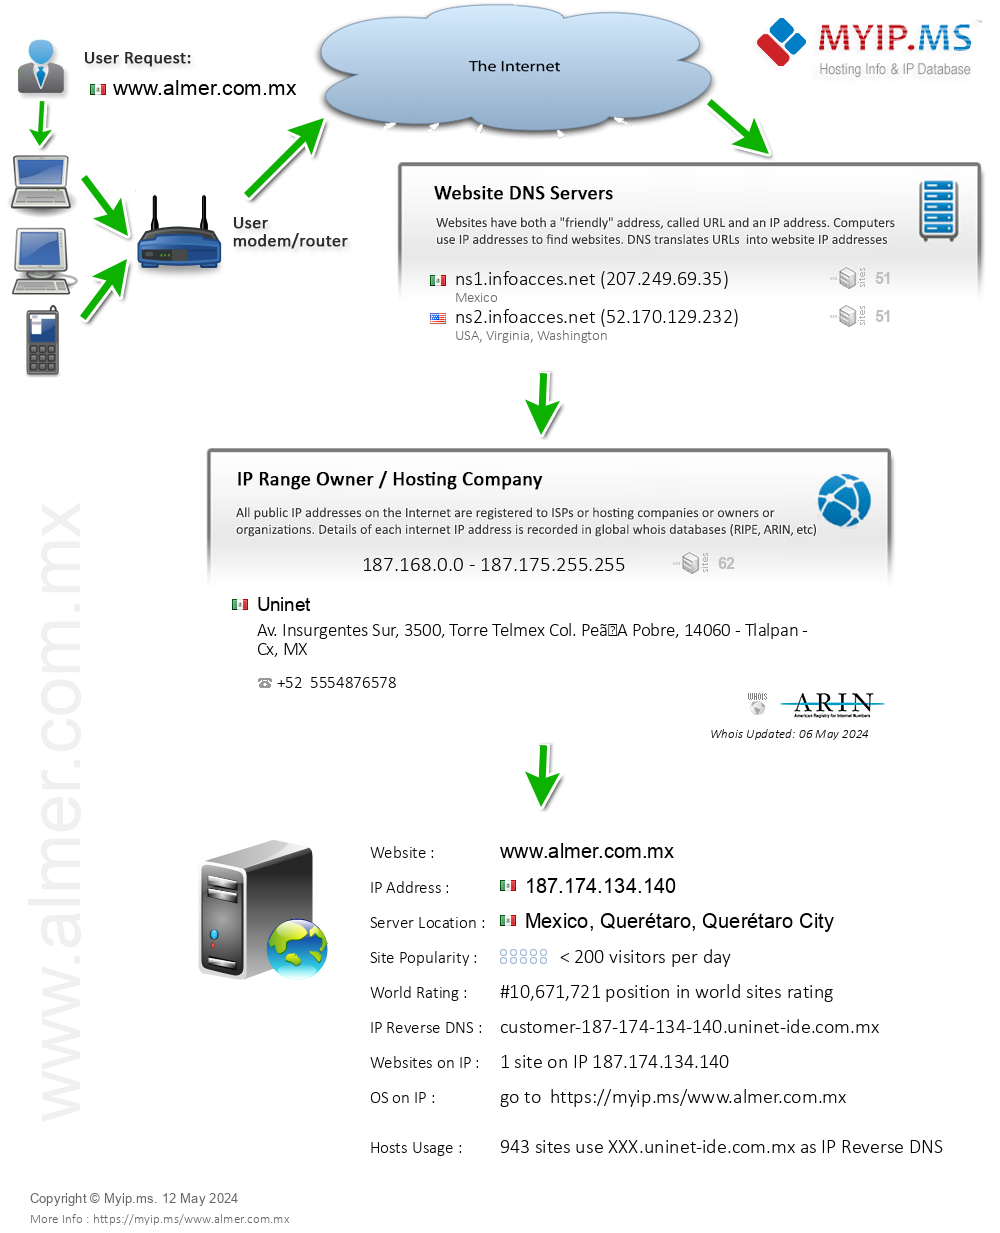 Almer.com.mx - Website Hosting Visual IP Diagram